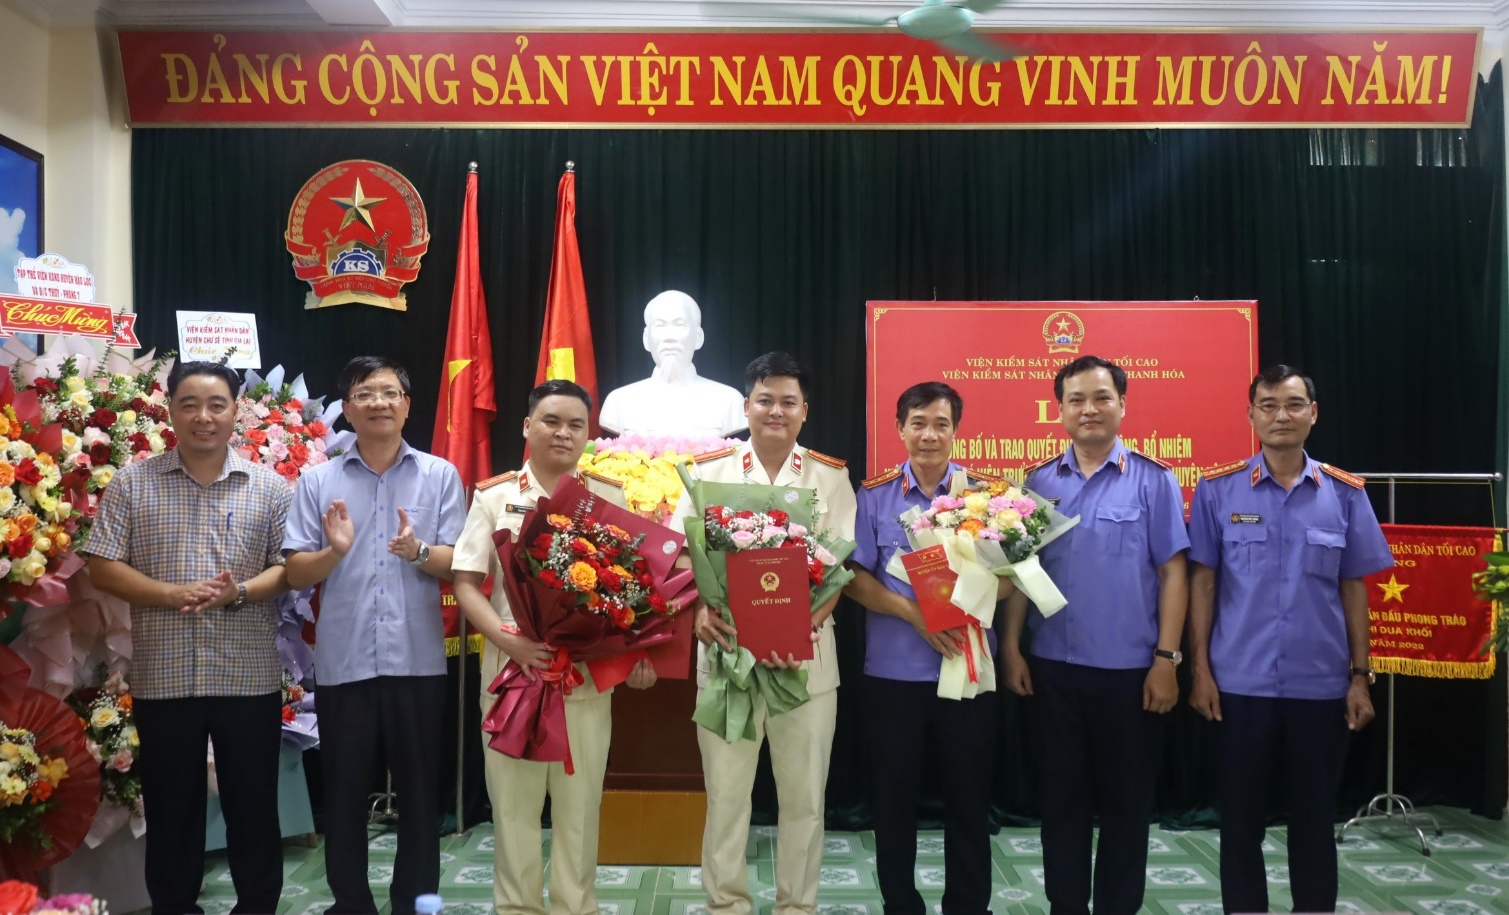 Lãnh đạo VKSND tỉnh, lãnh đạo Huyện ủy và các cơ quan, ban ngành trên địa bàn huyện chụp ảnh lưu niệm cùng hai đồng chí mới bổ nhiệm và đồng chí Đồng Văn Hoan